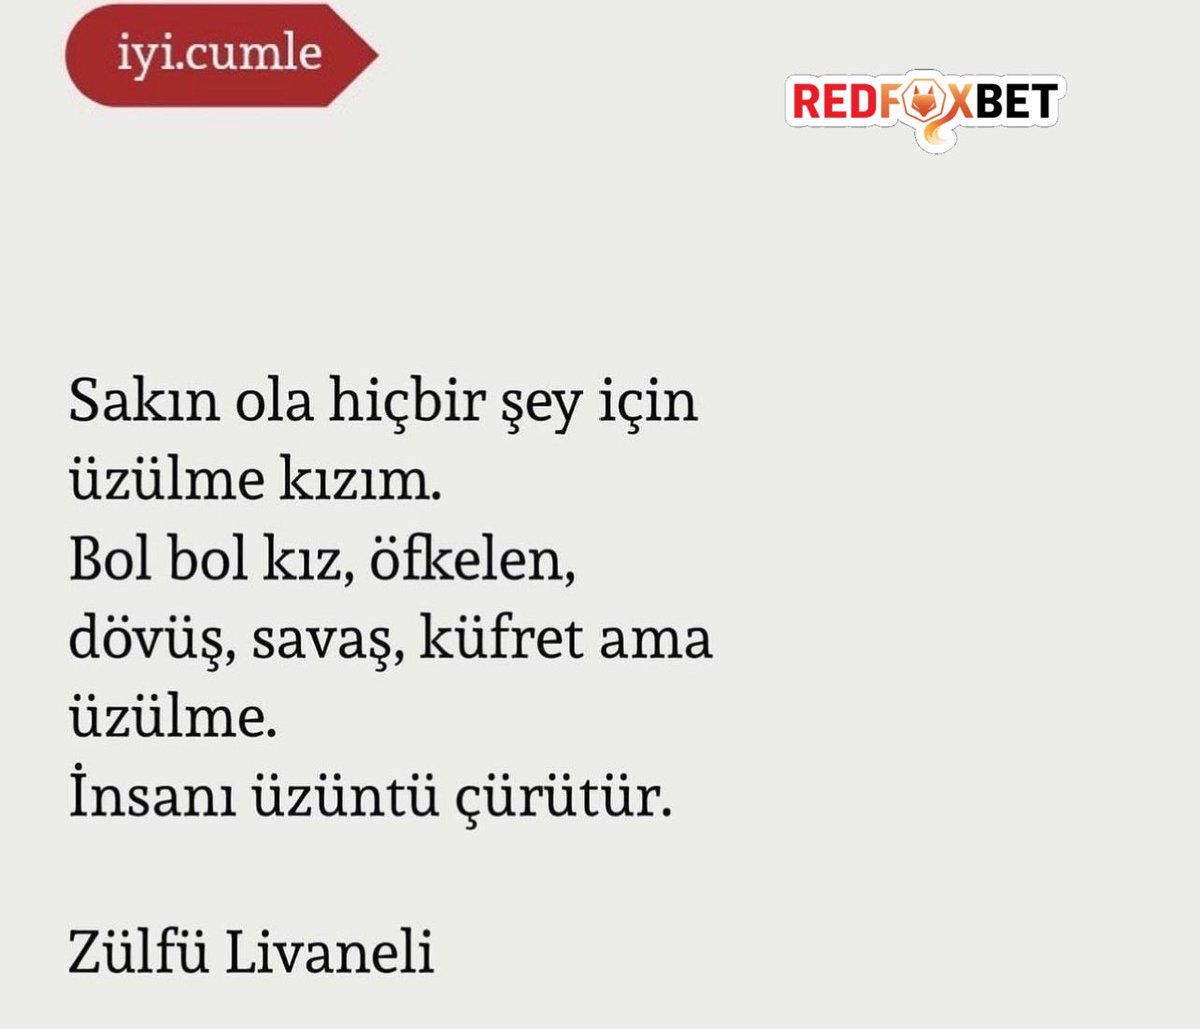 Zülfü Livaneli’nin şu yazısı çok hoşuma gidiyor.